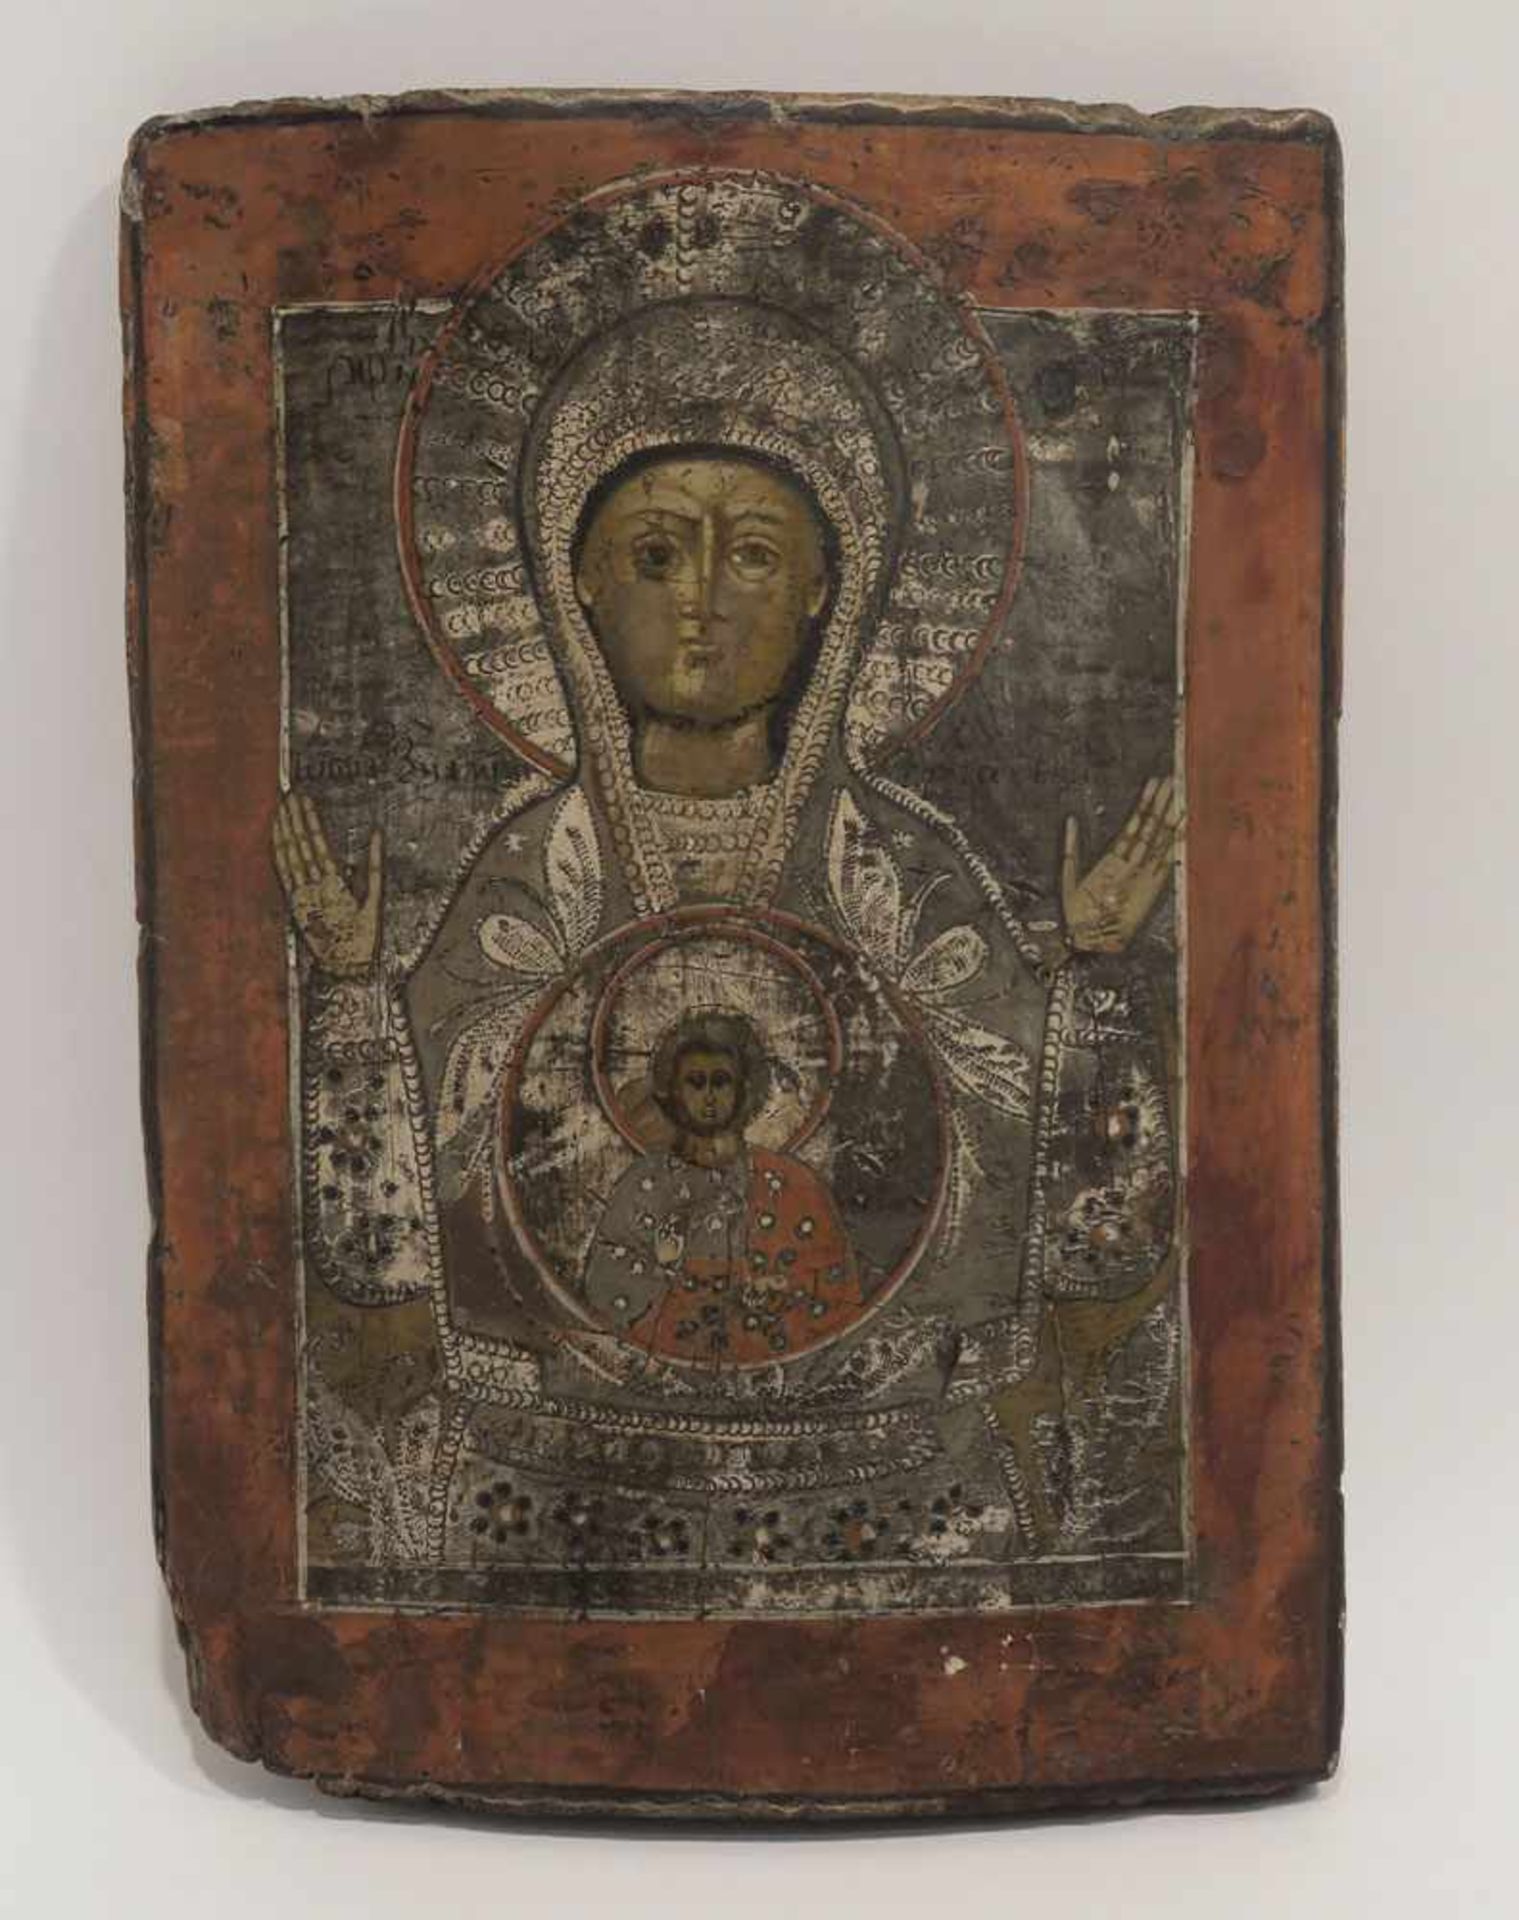 Gottesmutter des Zeichens von Nowgorod (Znamenie) Russland, 19. Jh. Tempera/Holz, zwei verlorene